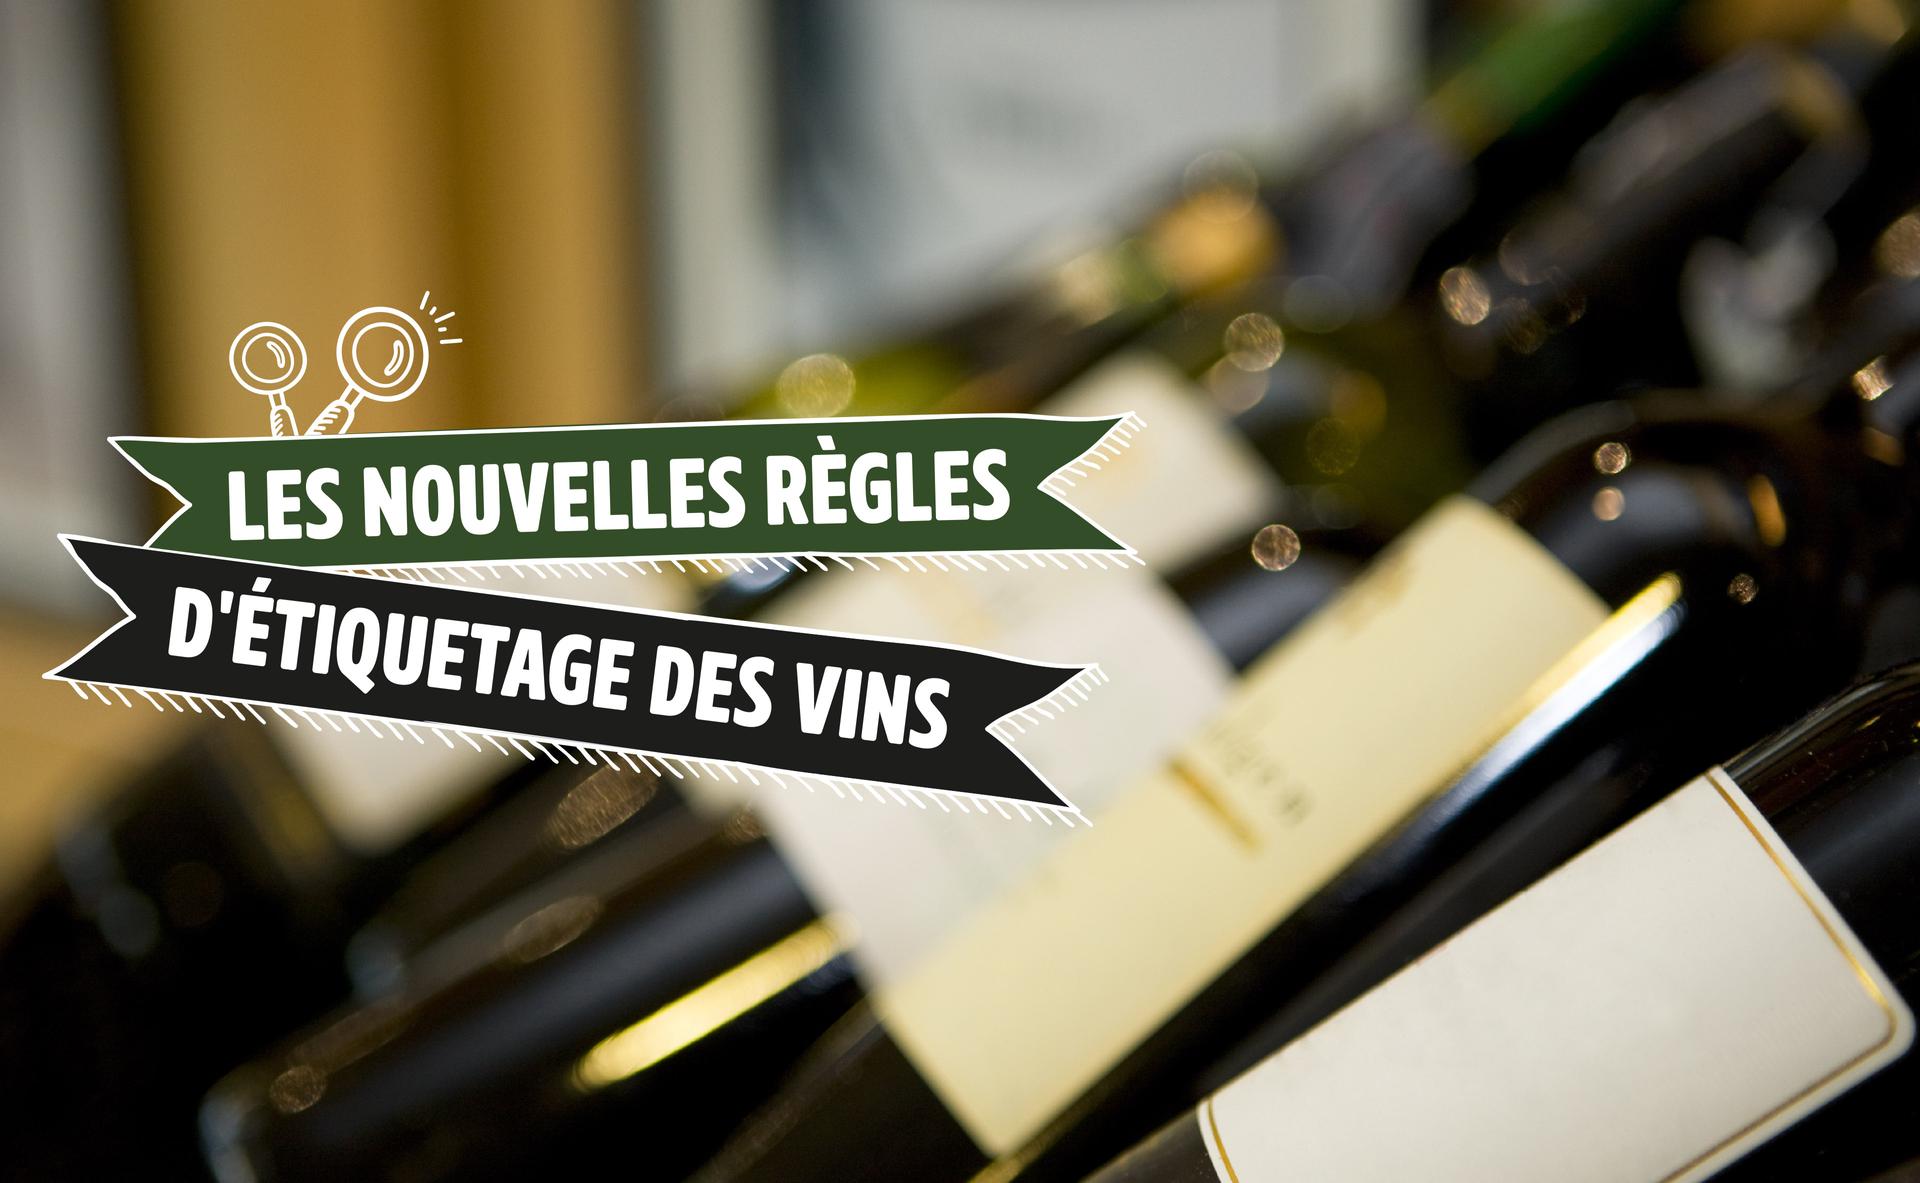 Les nouvelles règles d’étiquetage des vins